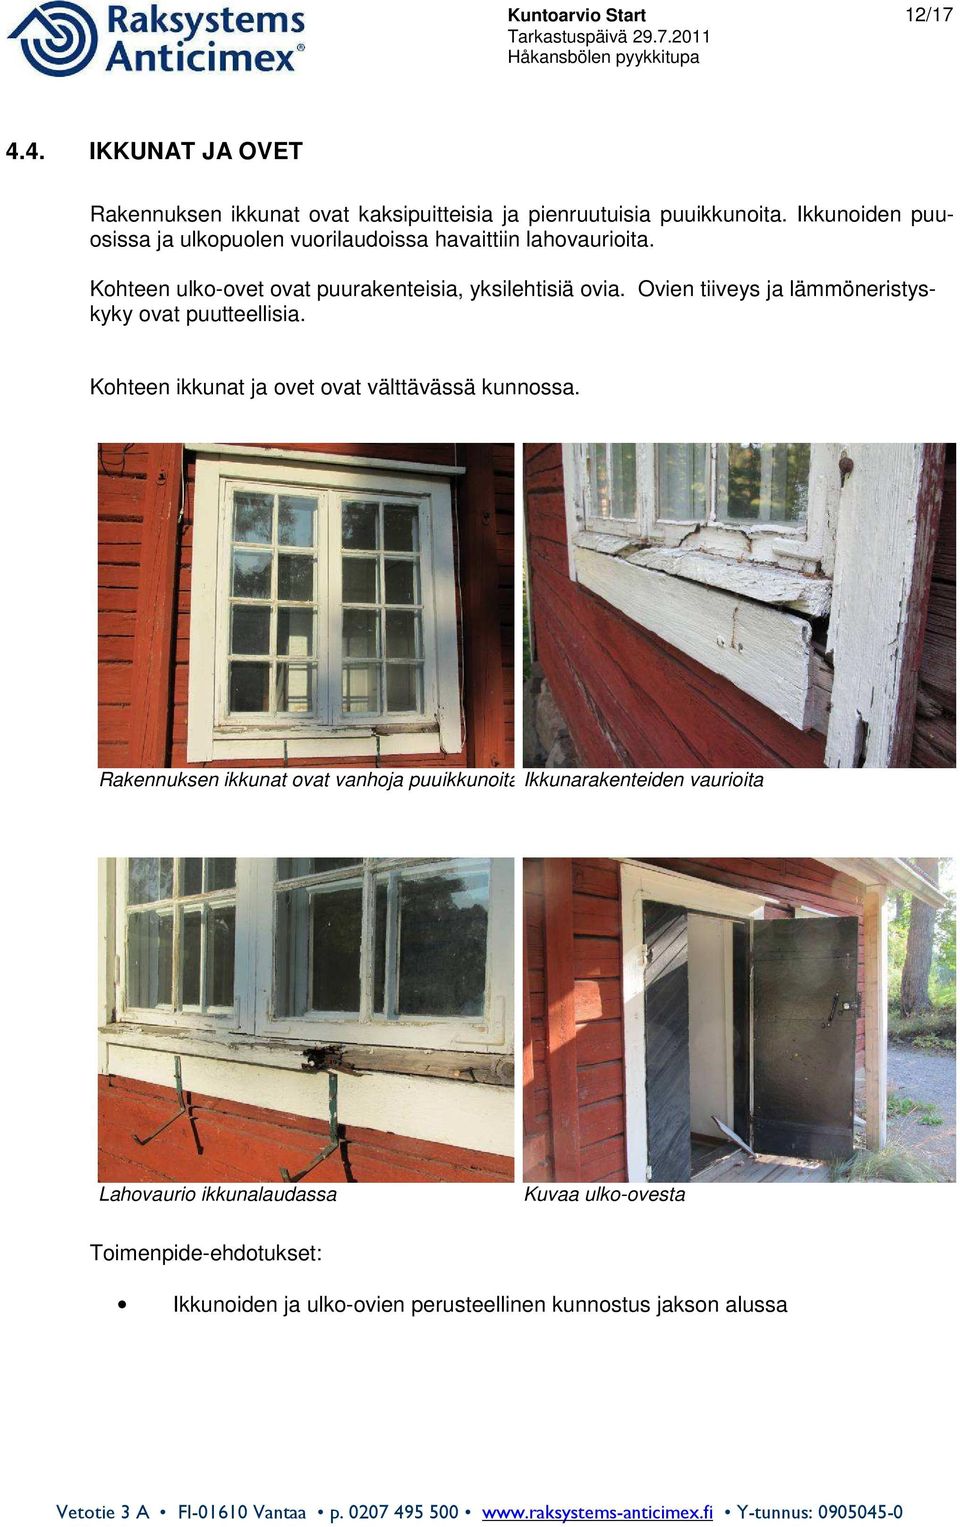 Ovien tiiveys ja lämmöneristyskyky ovat puutteellisia. Kohteen ikkunat ja ovet ovat välttävässä kunnossa.